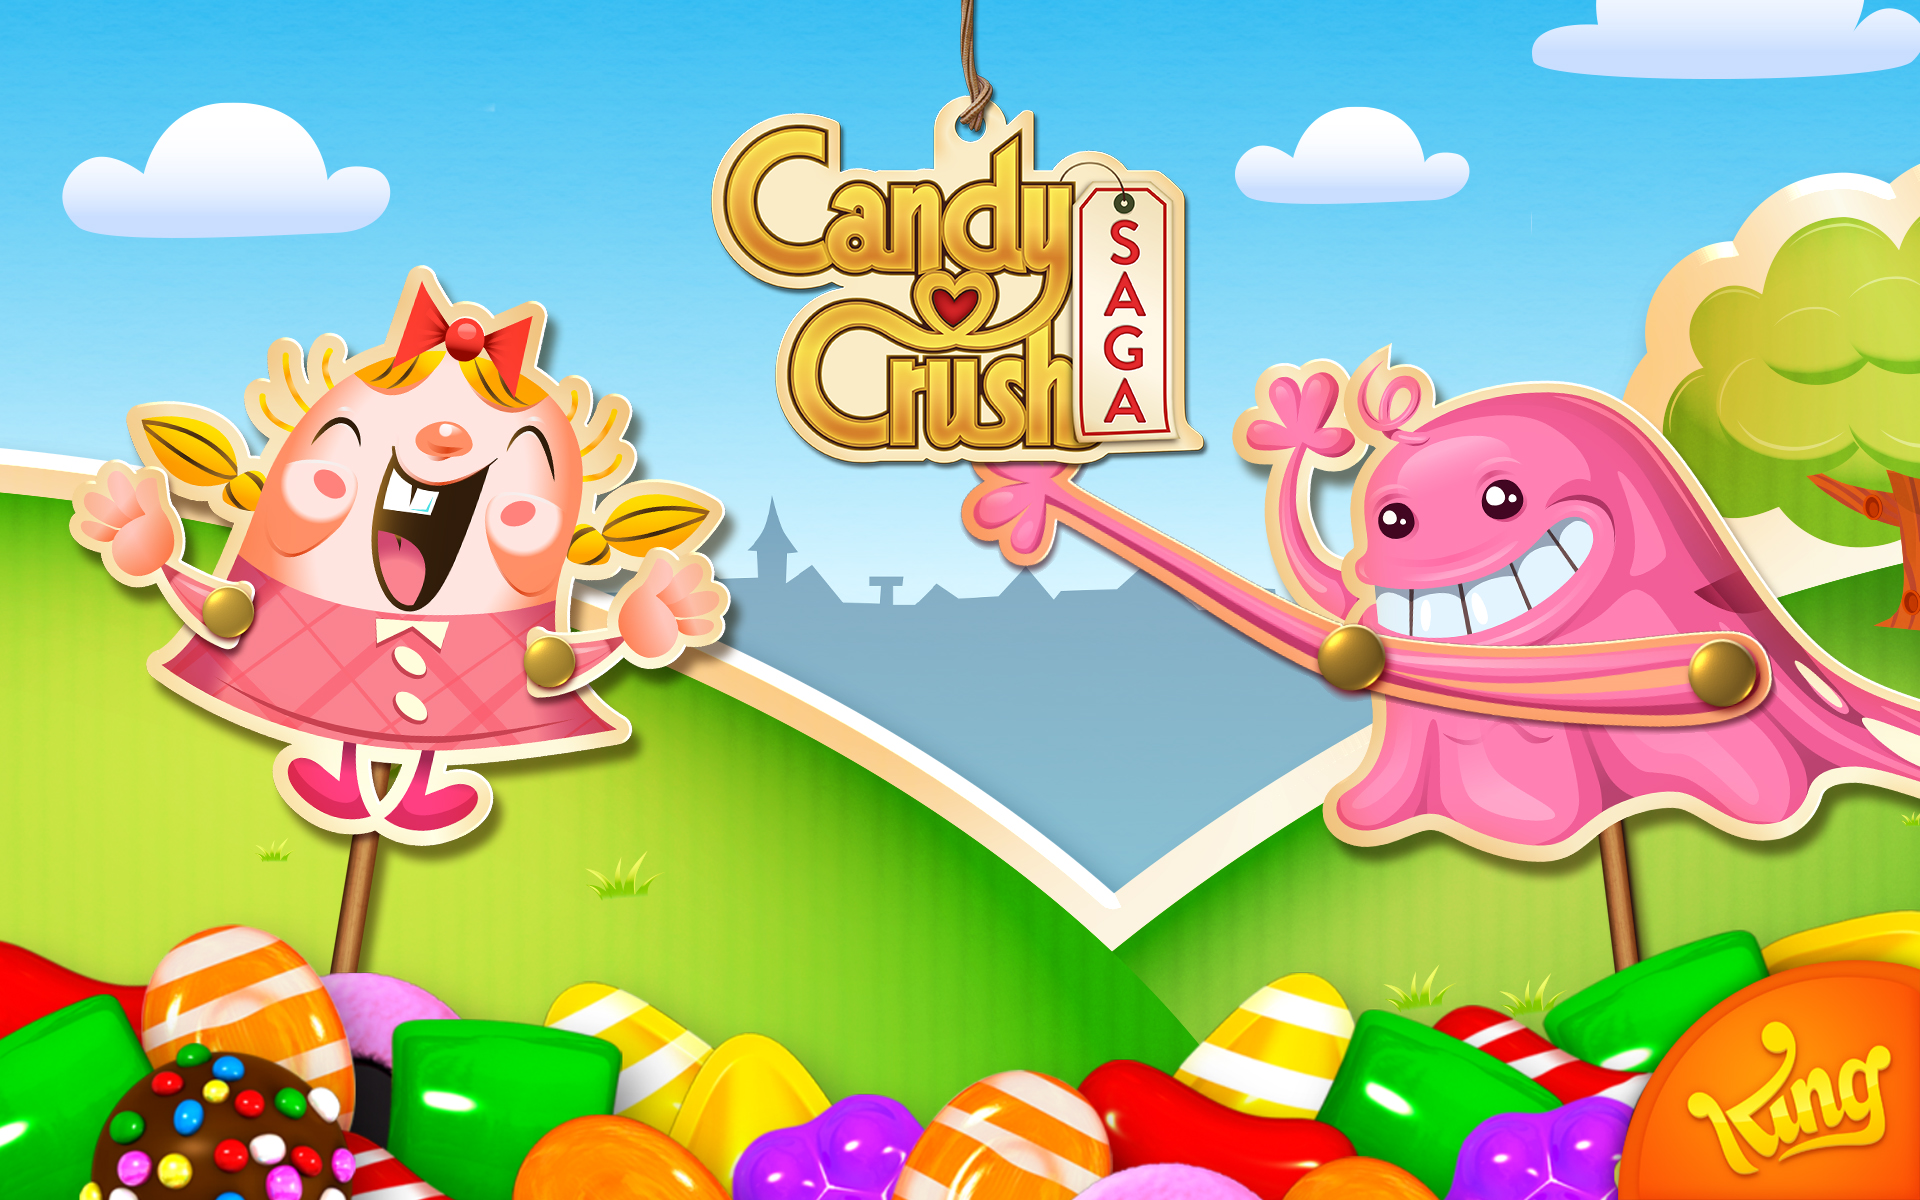 Скачать обои Candy Crush Saga на телефон бесплатно